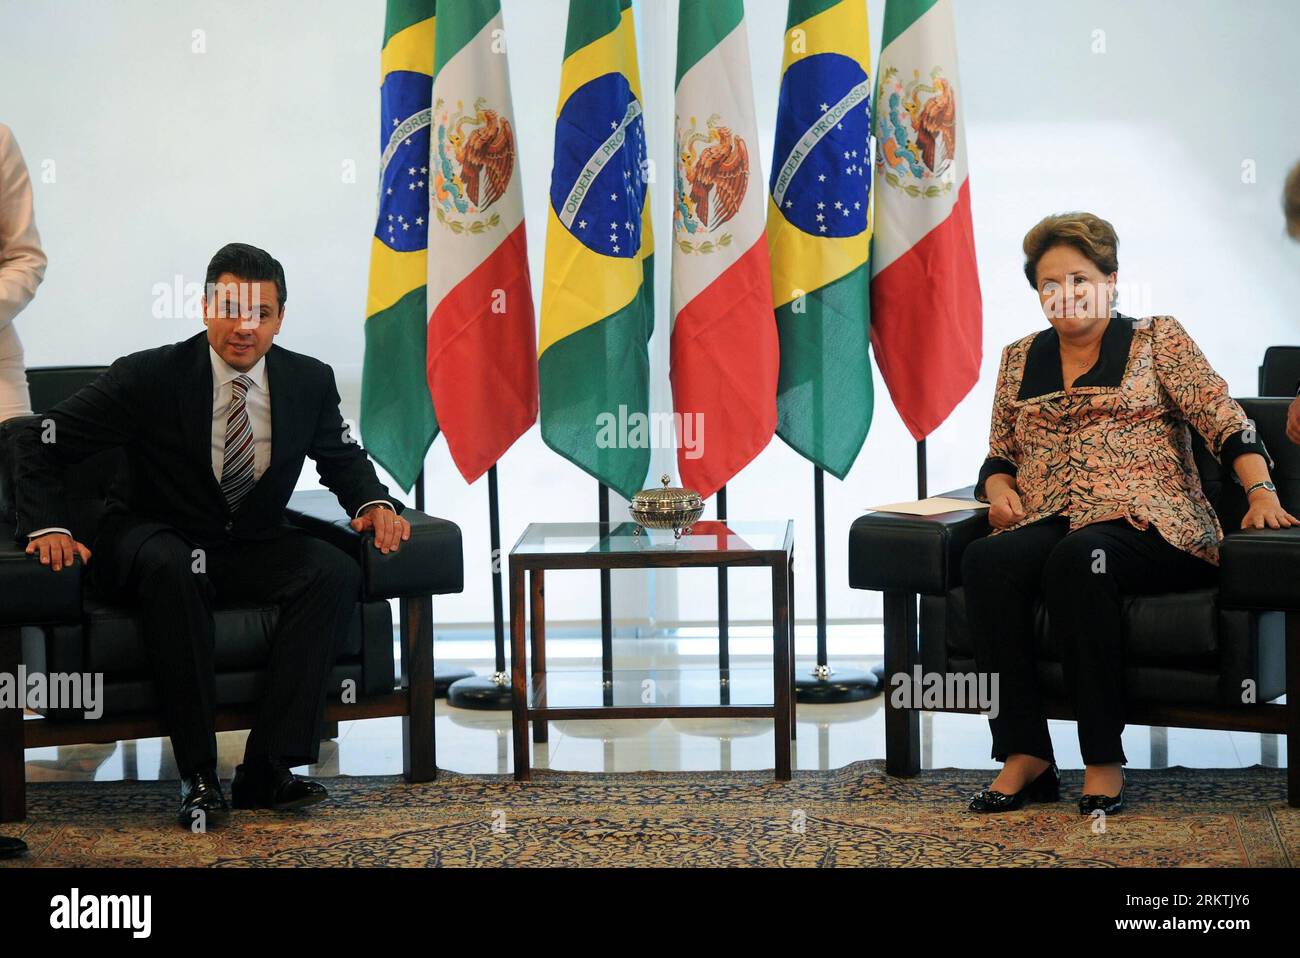 Bildnummer : 58496114 Datum : 20.09.2012 Copyright : imago/Xinhua BRASILIA, 20 septembre 2012 (Xinhua) -- la présidente brésilienne Dilma Rousseff (à droite) rencontre le président mexicain élu Enrique Pena Nieto au Palais Planalto à Brasilia, Brésil, le 20 septembre 2012. (Xinhua/Agencia Estado) (ae) (mp) (ce) BRASILIA-MEXICO-POLITICS-VISIT PUBLICATIONxNOTxINxCHN Politik people premiumd x0x xac 2012 quer 58496114 Date 20 09 2012 Copyright Imago XINHUA Brasilia sept 20 2012 la Présidente brésilienne DE XINHUA Dilma Rousseff rencontre le Président MEXICAIN élu Enrique Pena Nieto AU Palais Plan Alto à B. Banque D'Images